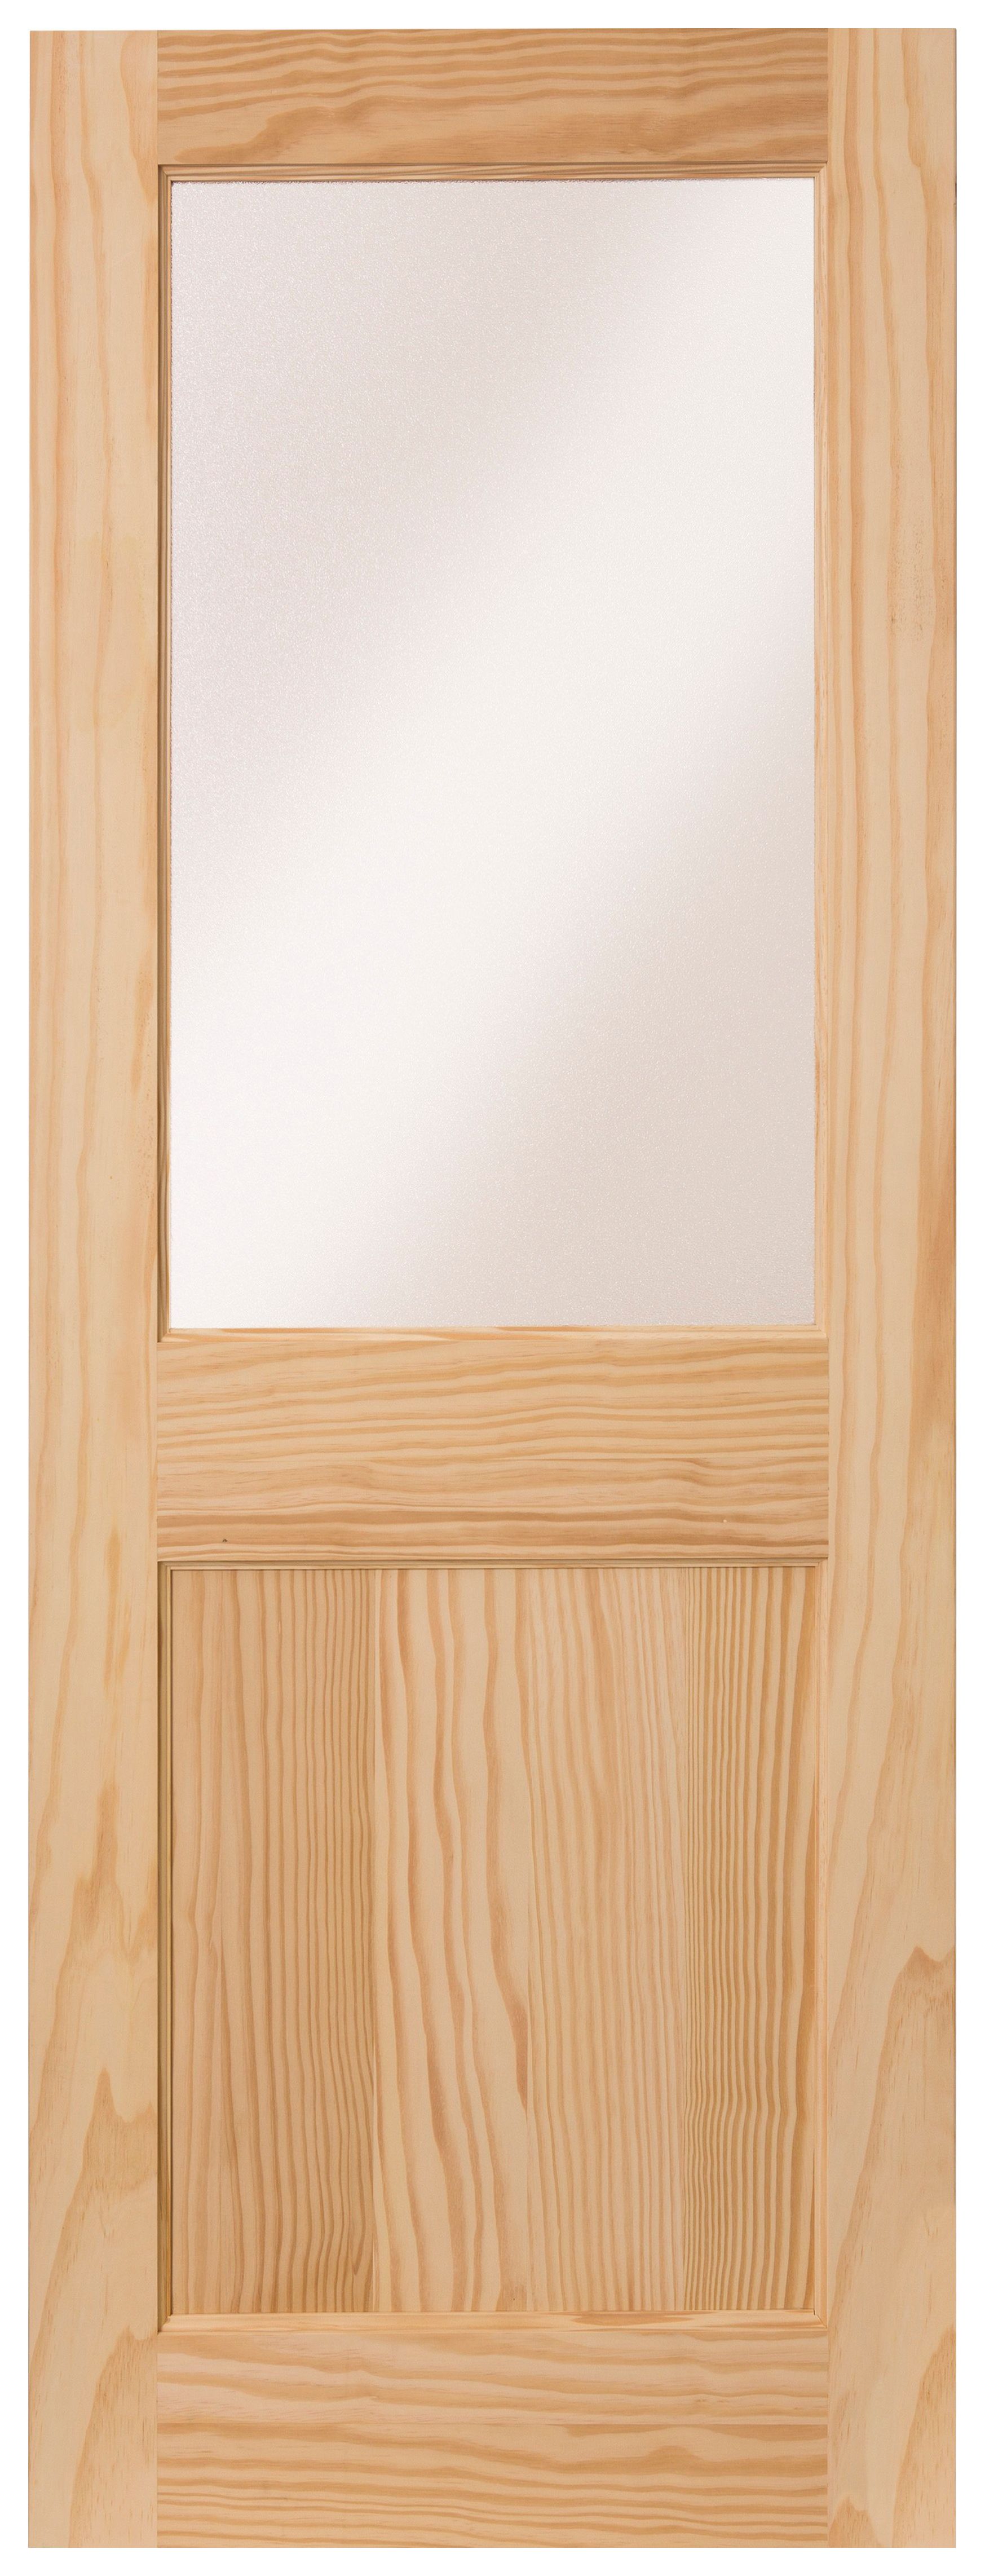 Wickes Tamar External 1 Panel Glazed Pine Door - 2032 x 813mm